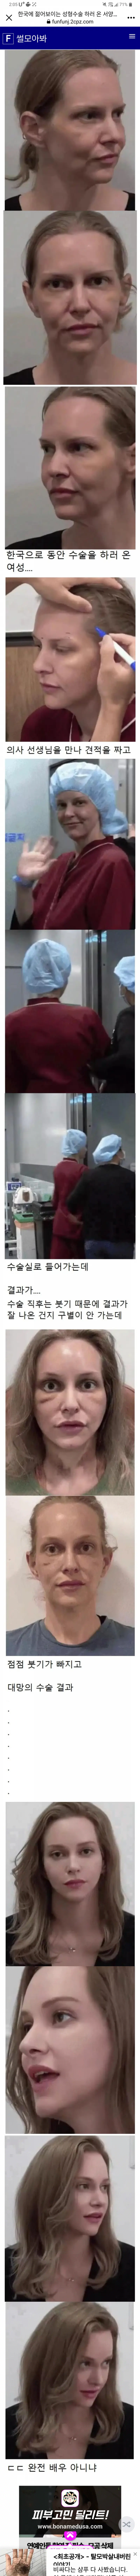 한국에 젊어 보이는성형하러온 서양녀 | mbong.kr 엠봉